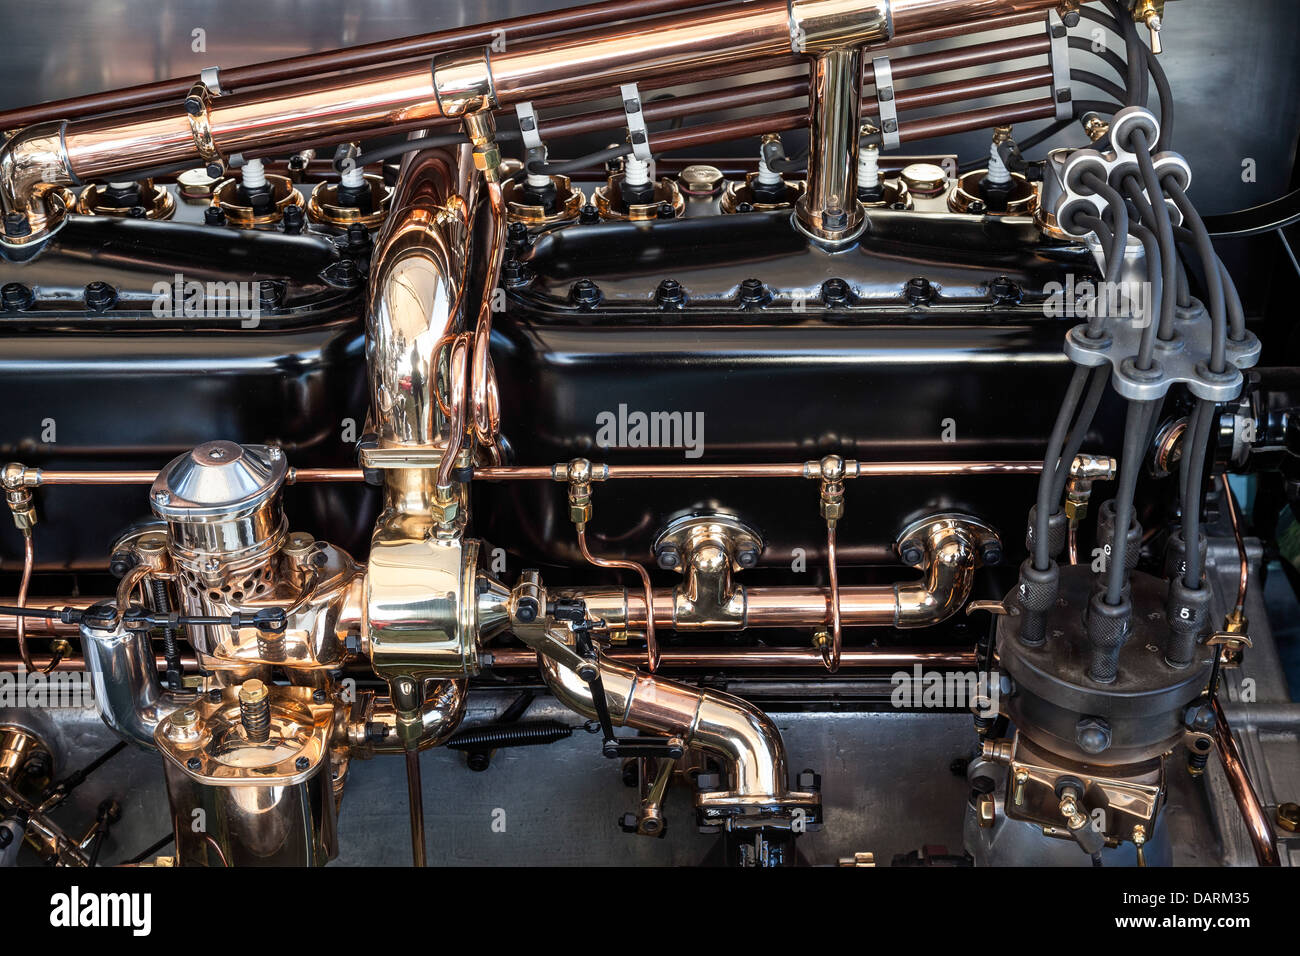 La baie moteur d'une Rolls Royce Silver Dawn 1908 Banque D'Images